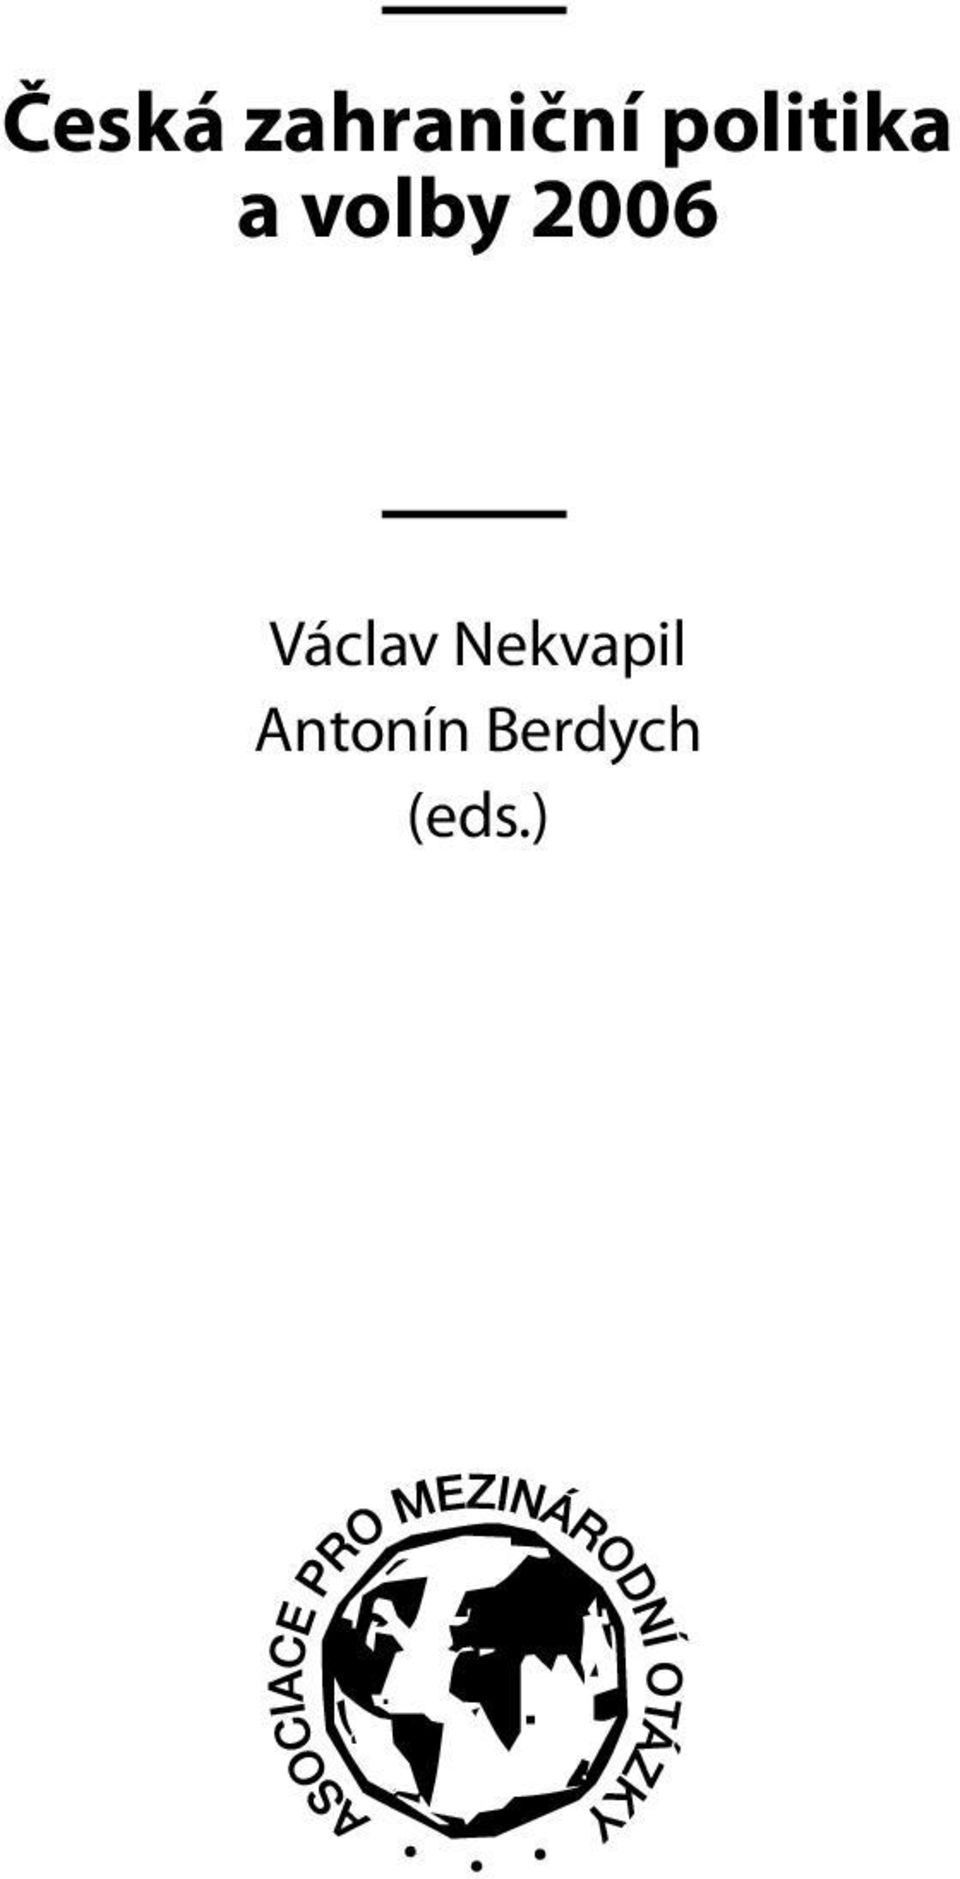 2006 Václav